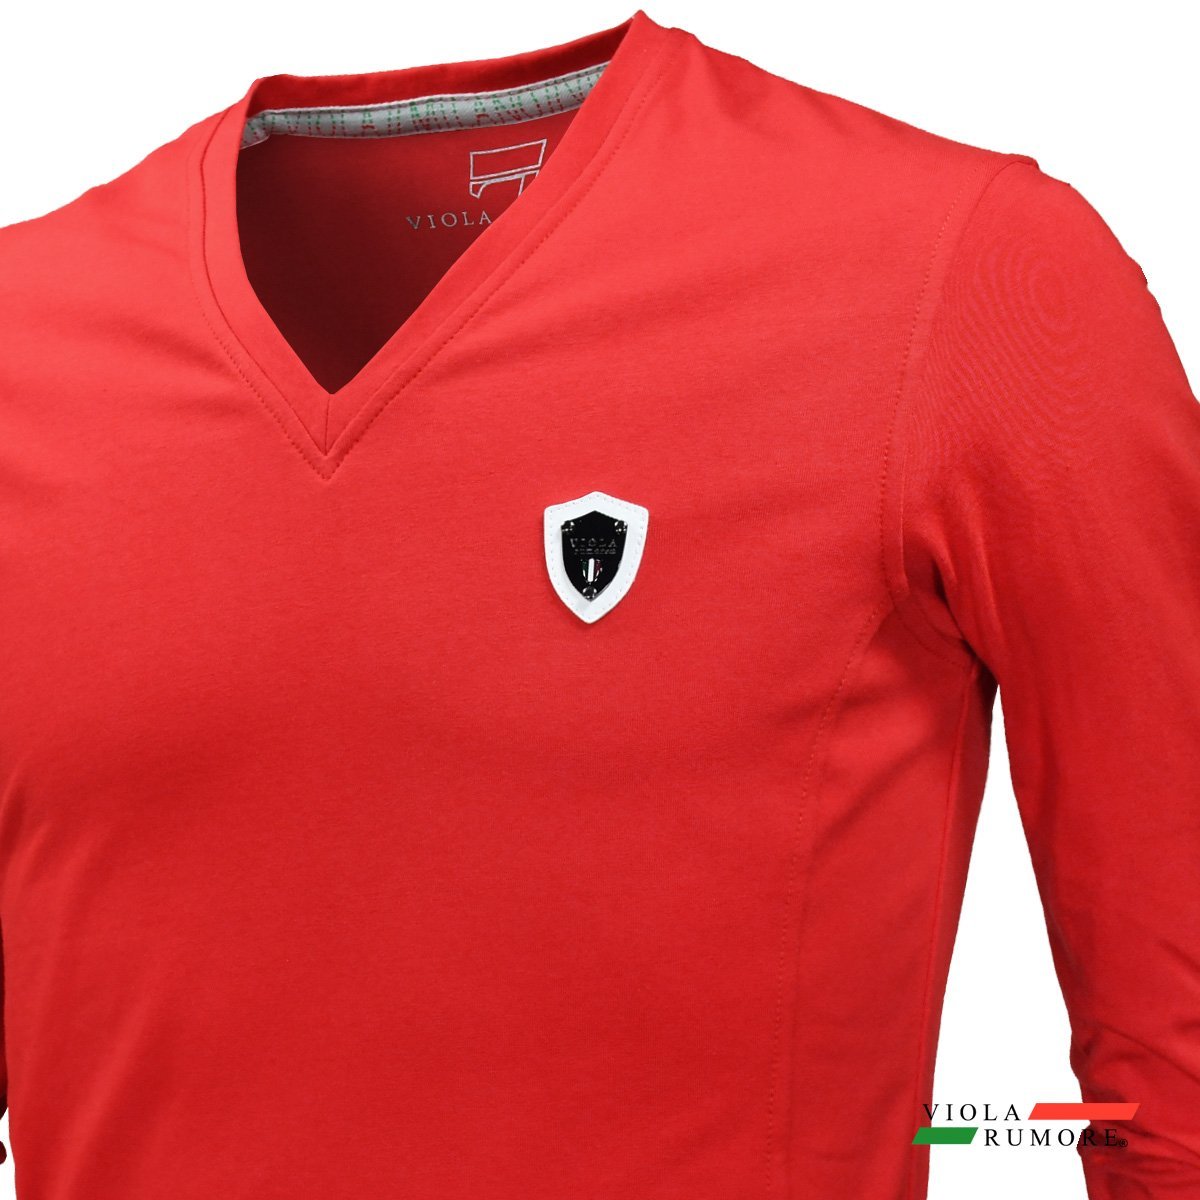 21111-re VIOLA rumore ヴィオラルモーレ ビオラ Tシャツ Vネック 背中プリント 7 シンプル 細身 長袖Tシャツ メンズ(レッド赤) L_画像4